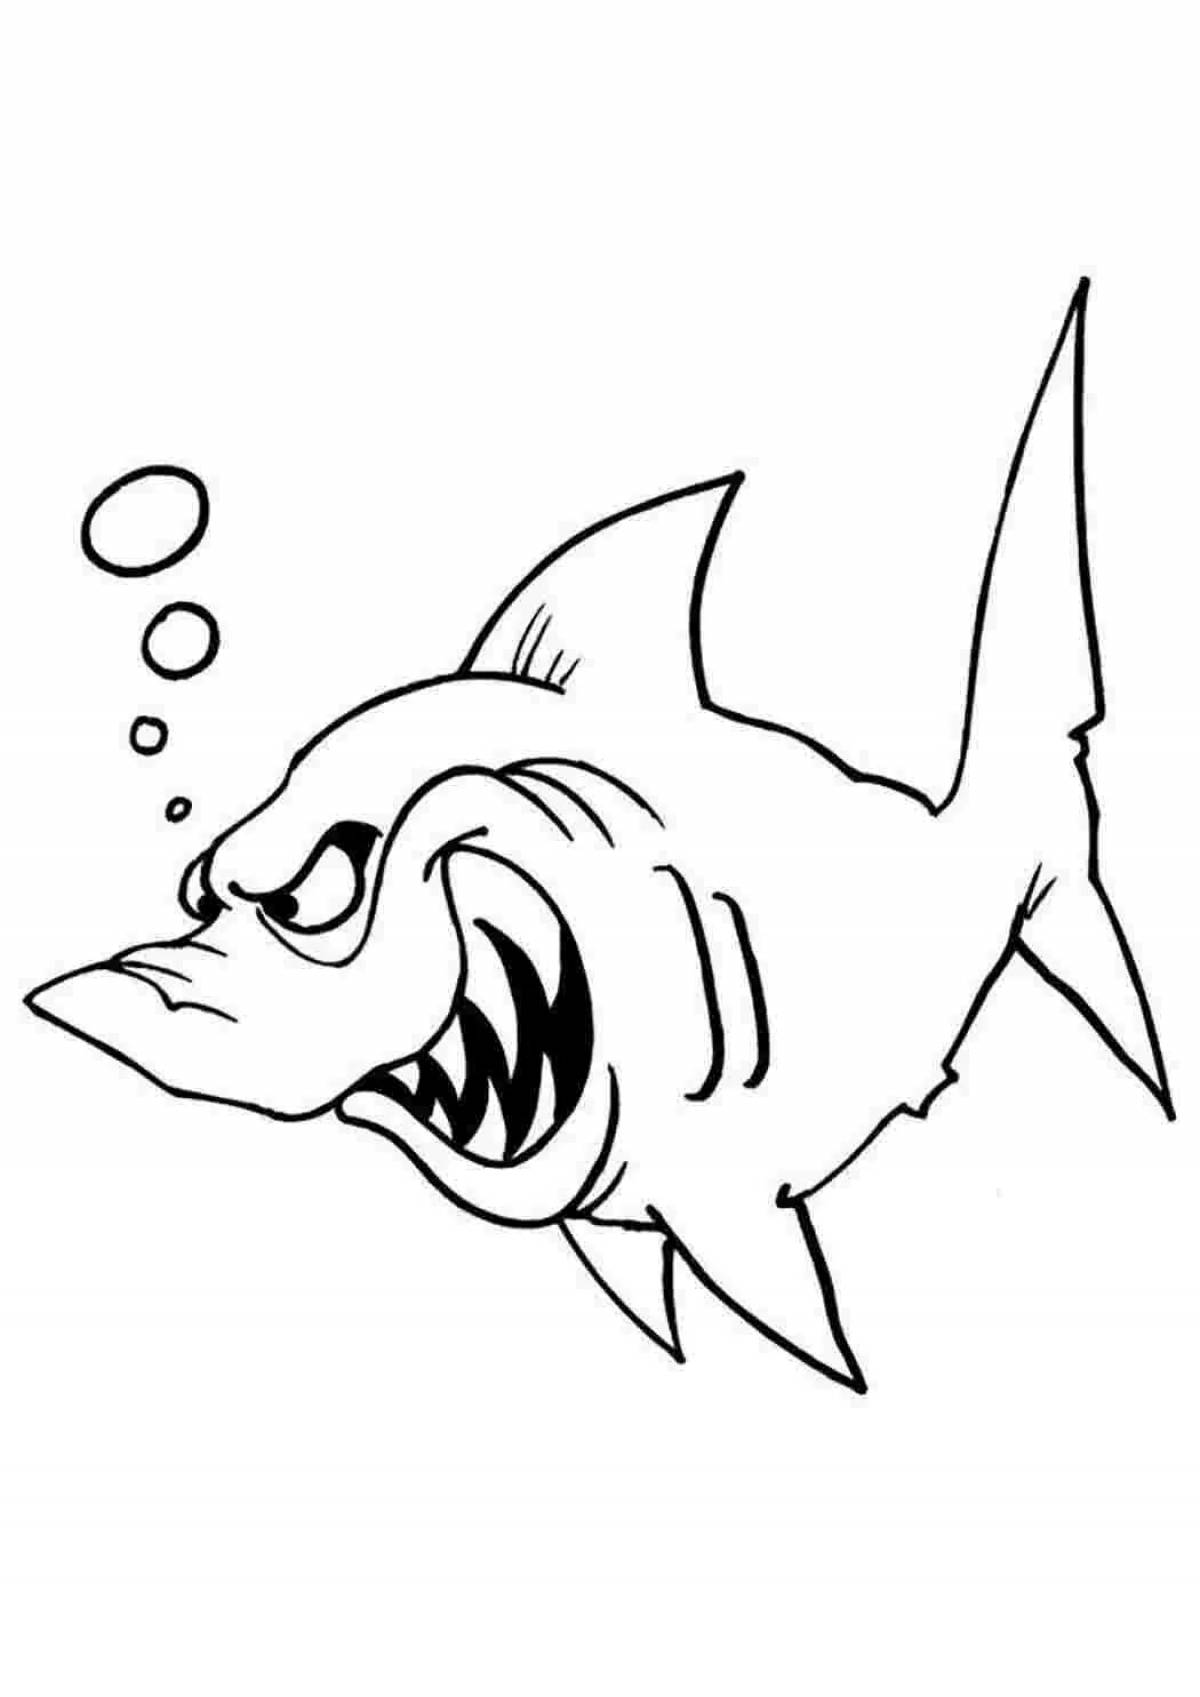 Angry shark #4